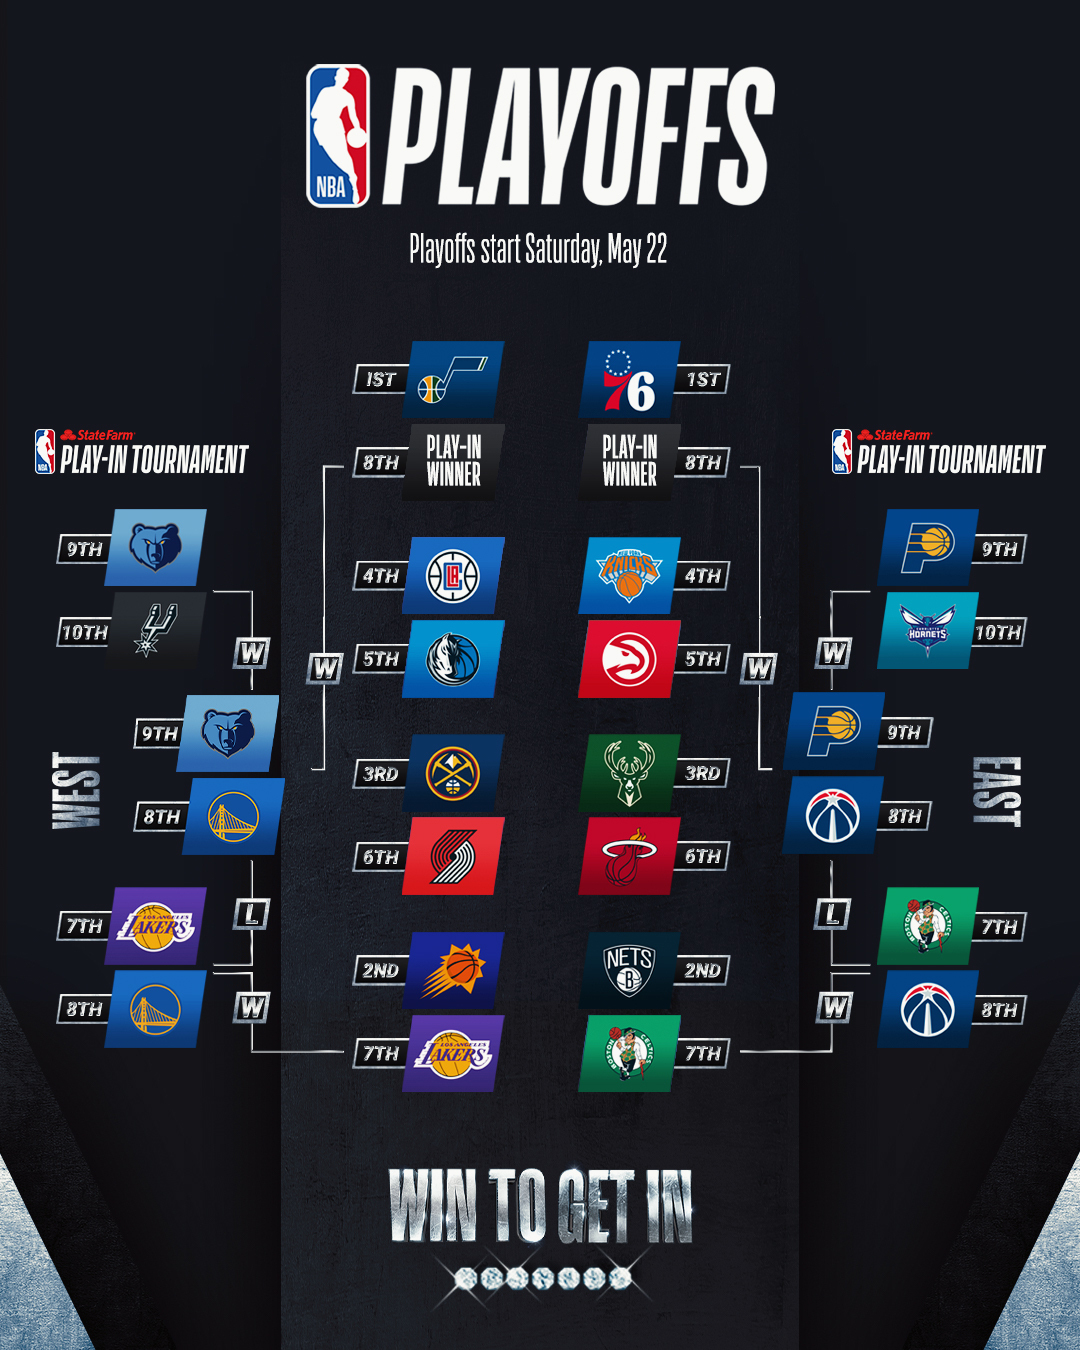 2021 NBA Playoffs Firstround schedule revealed BLEACHERS NEWS